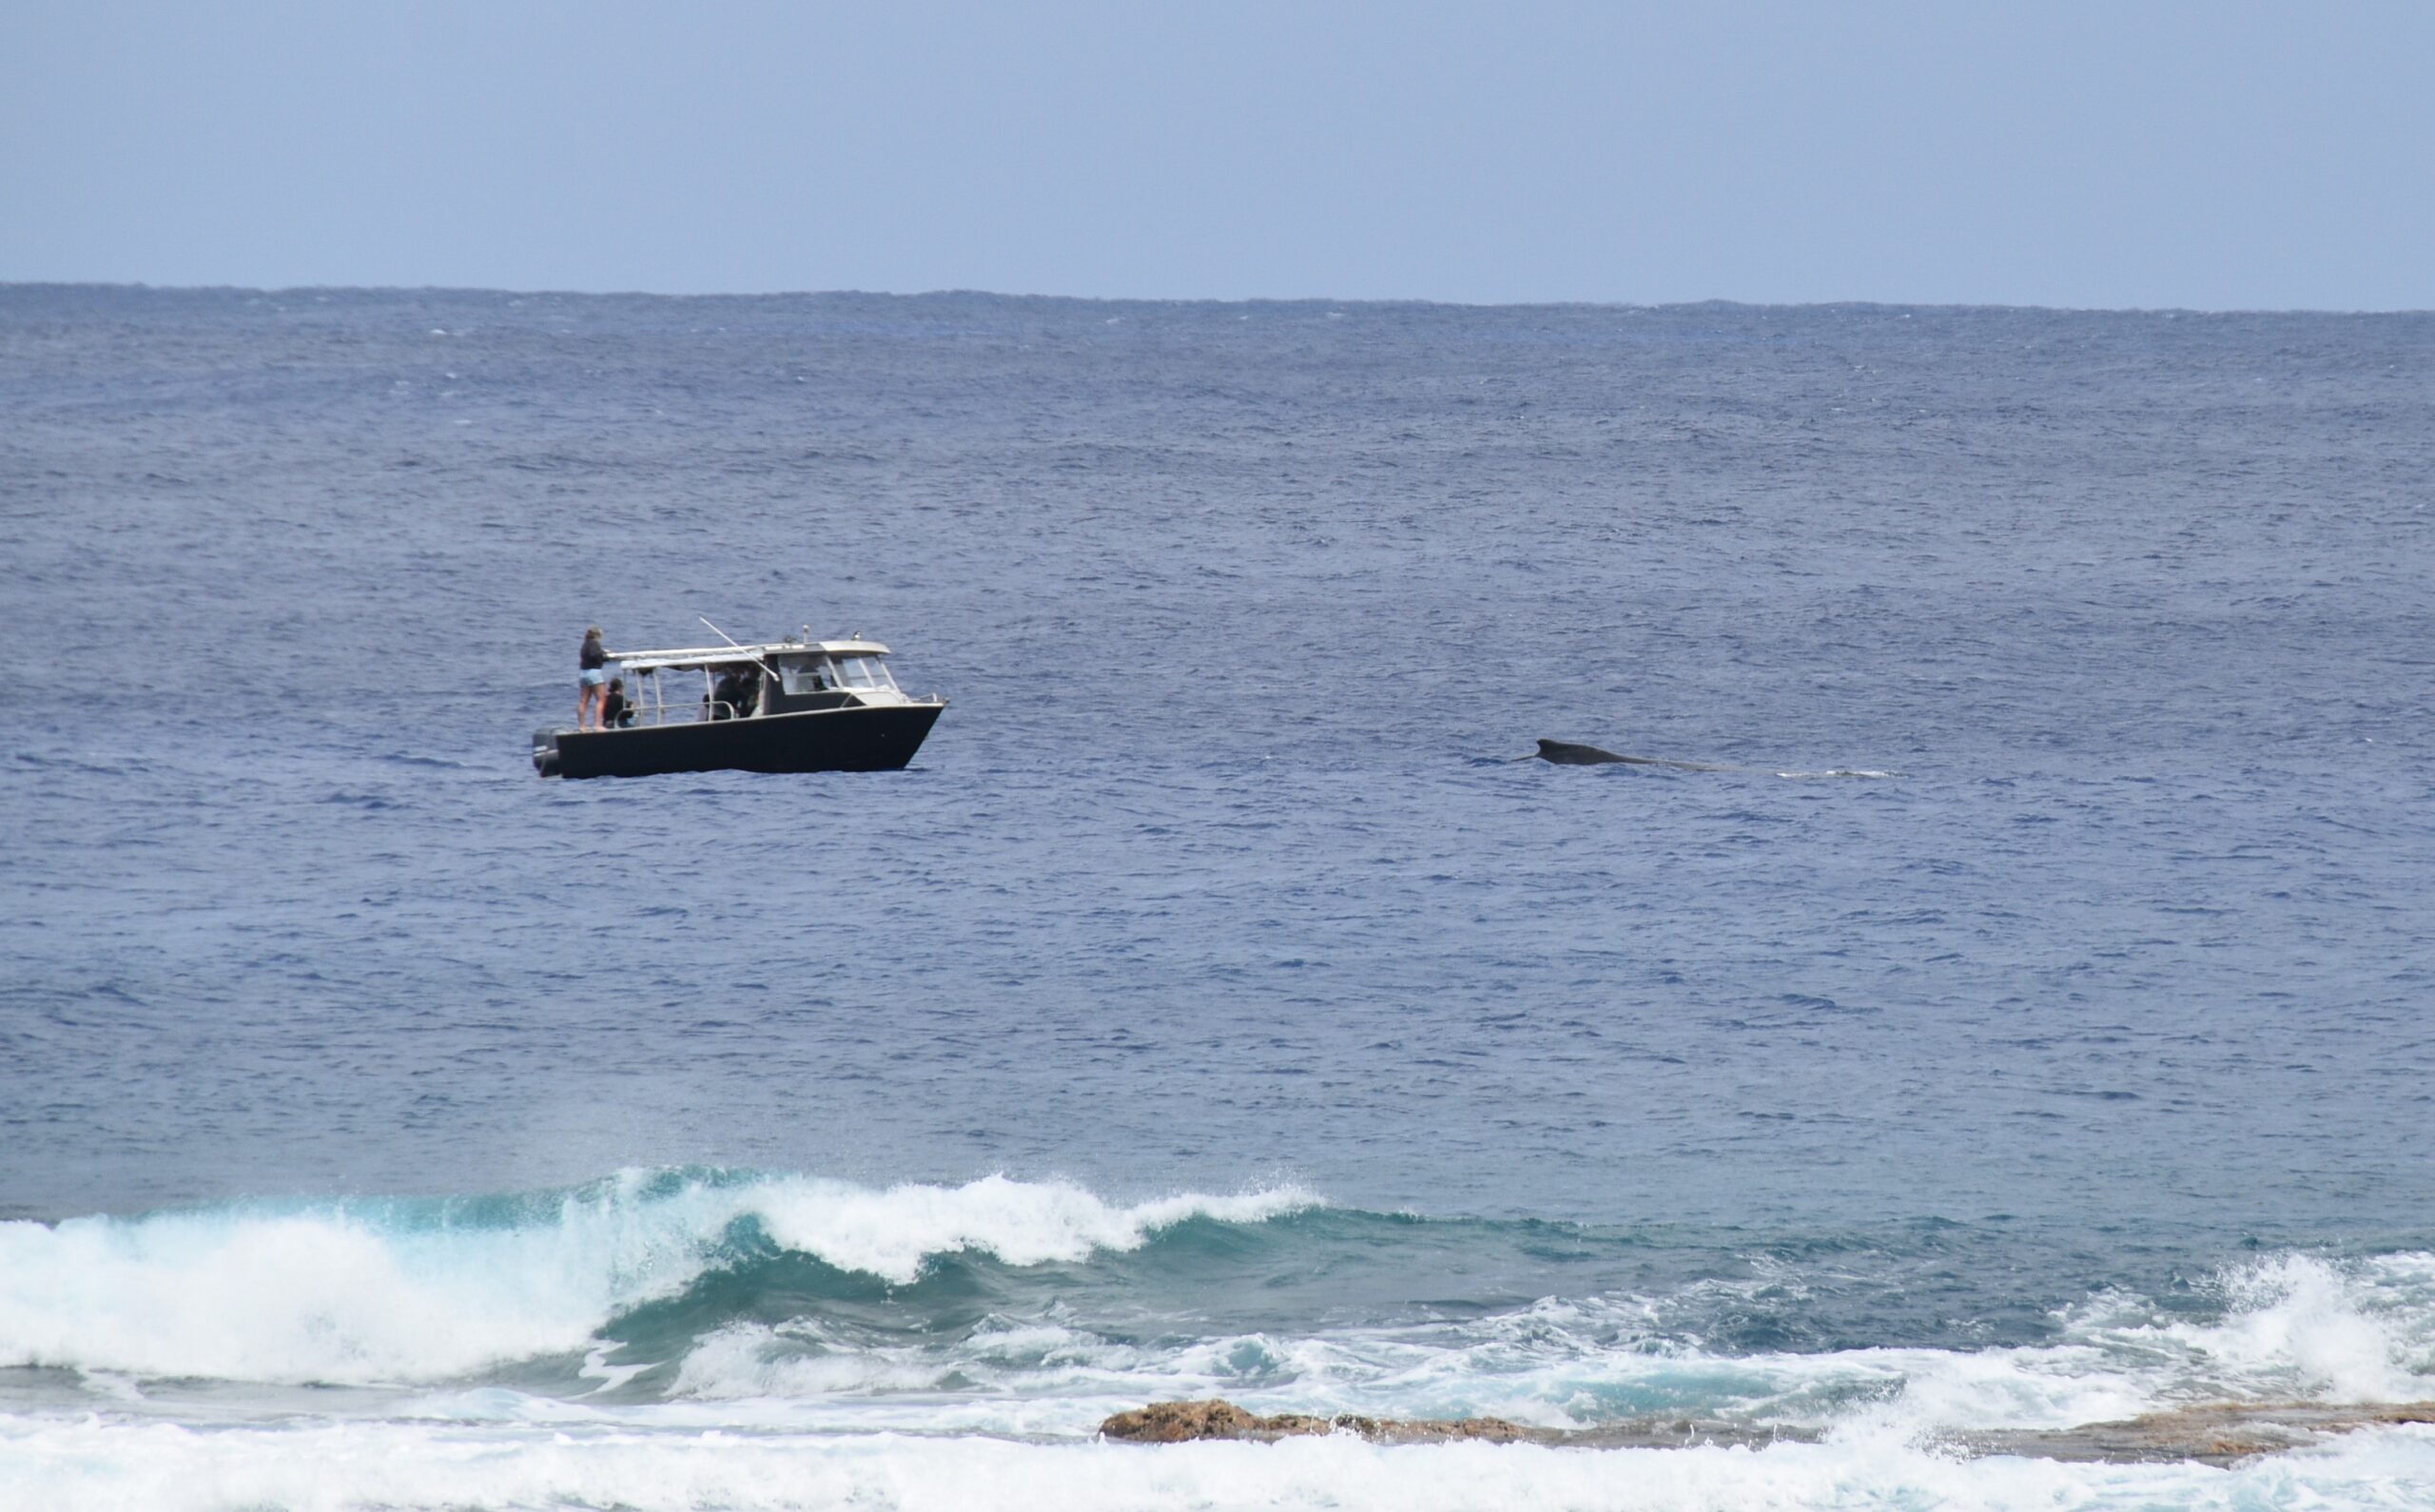 Te Ipukarea Society welcomes legal personhood of whales in international waters